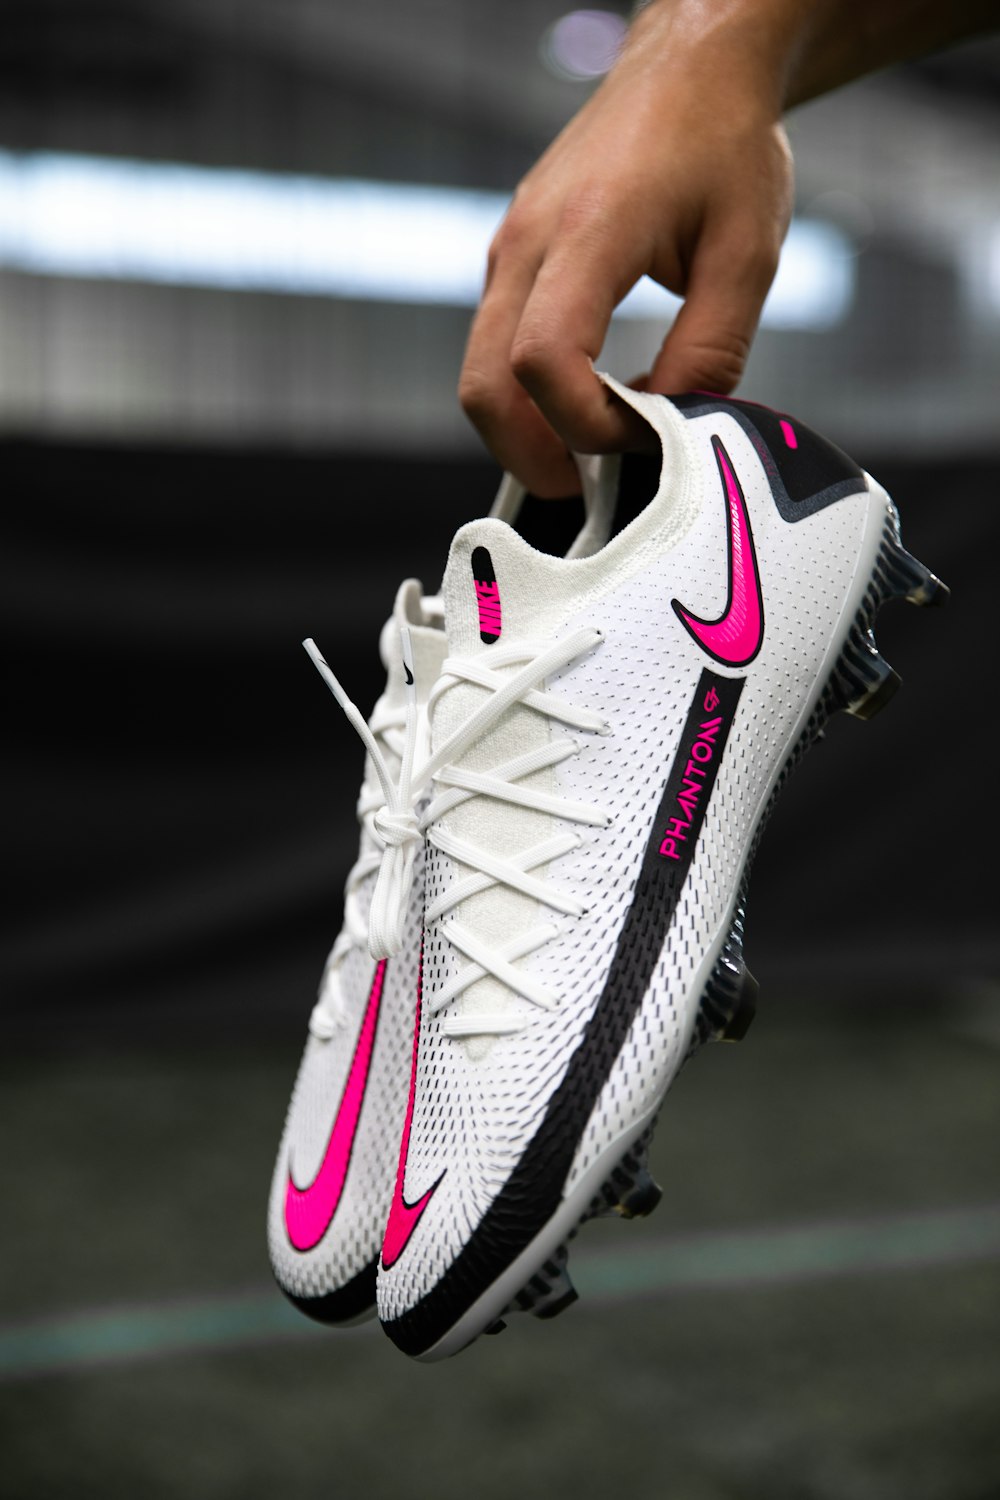 Foto Tenis nike blancos y negros – Imagen Nike phantom gt elite fg en